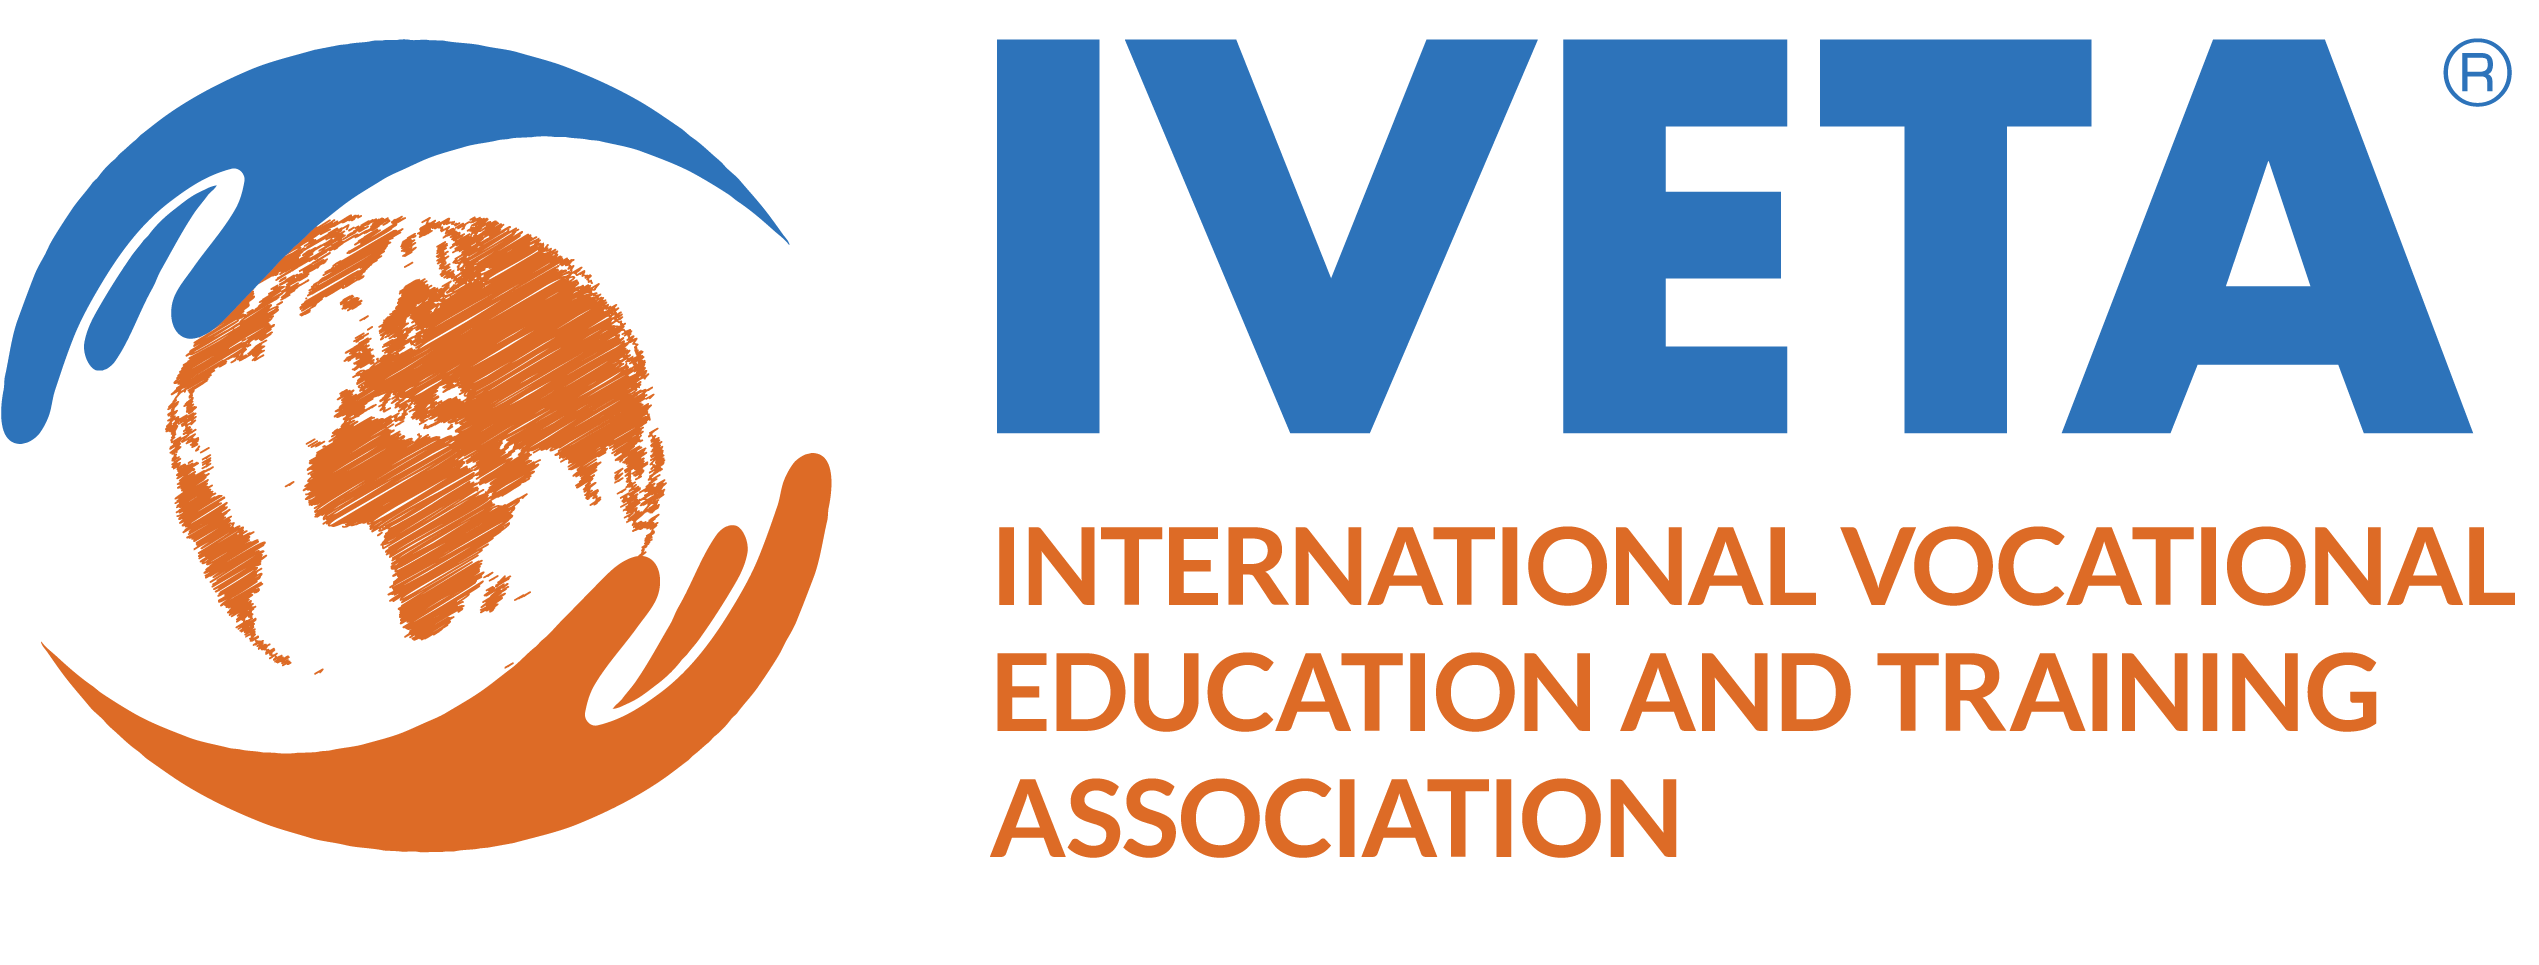 IVETA logo